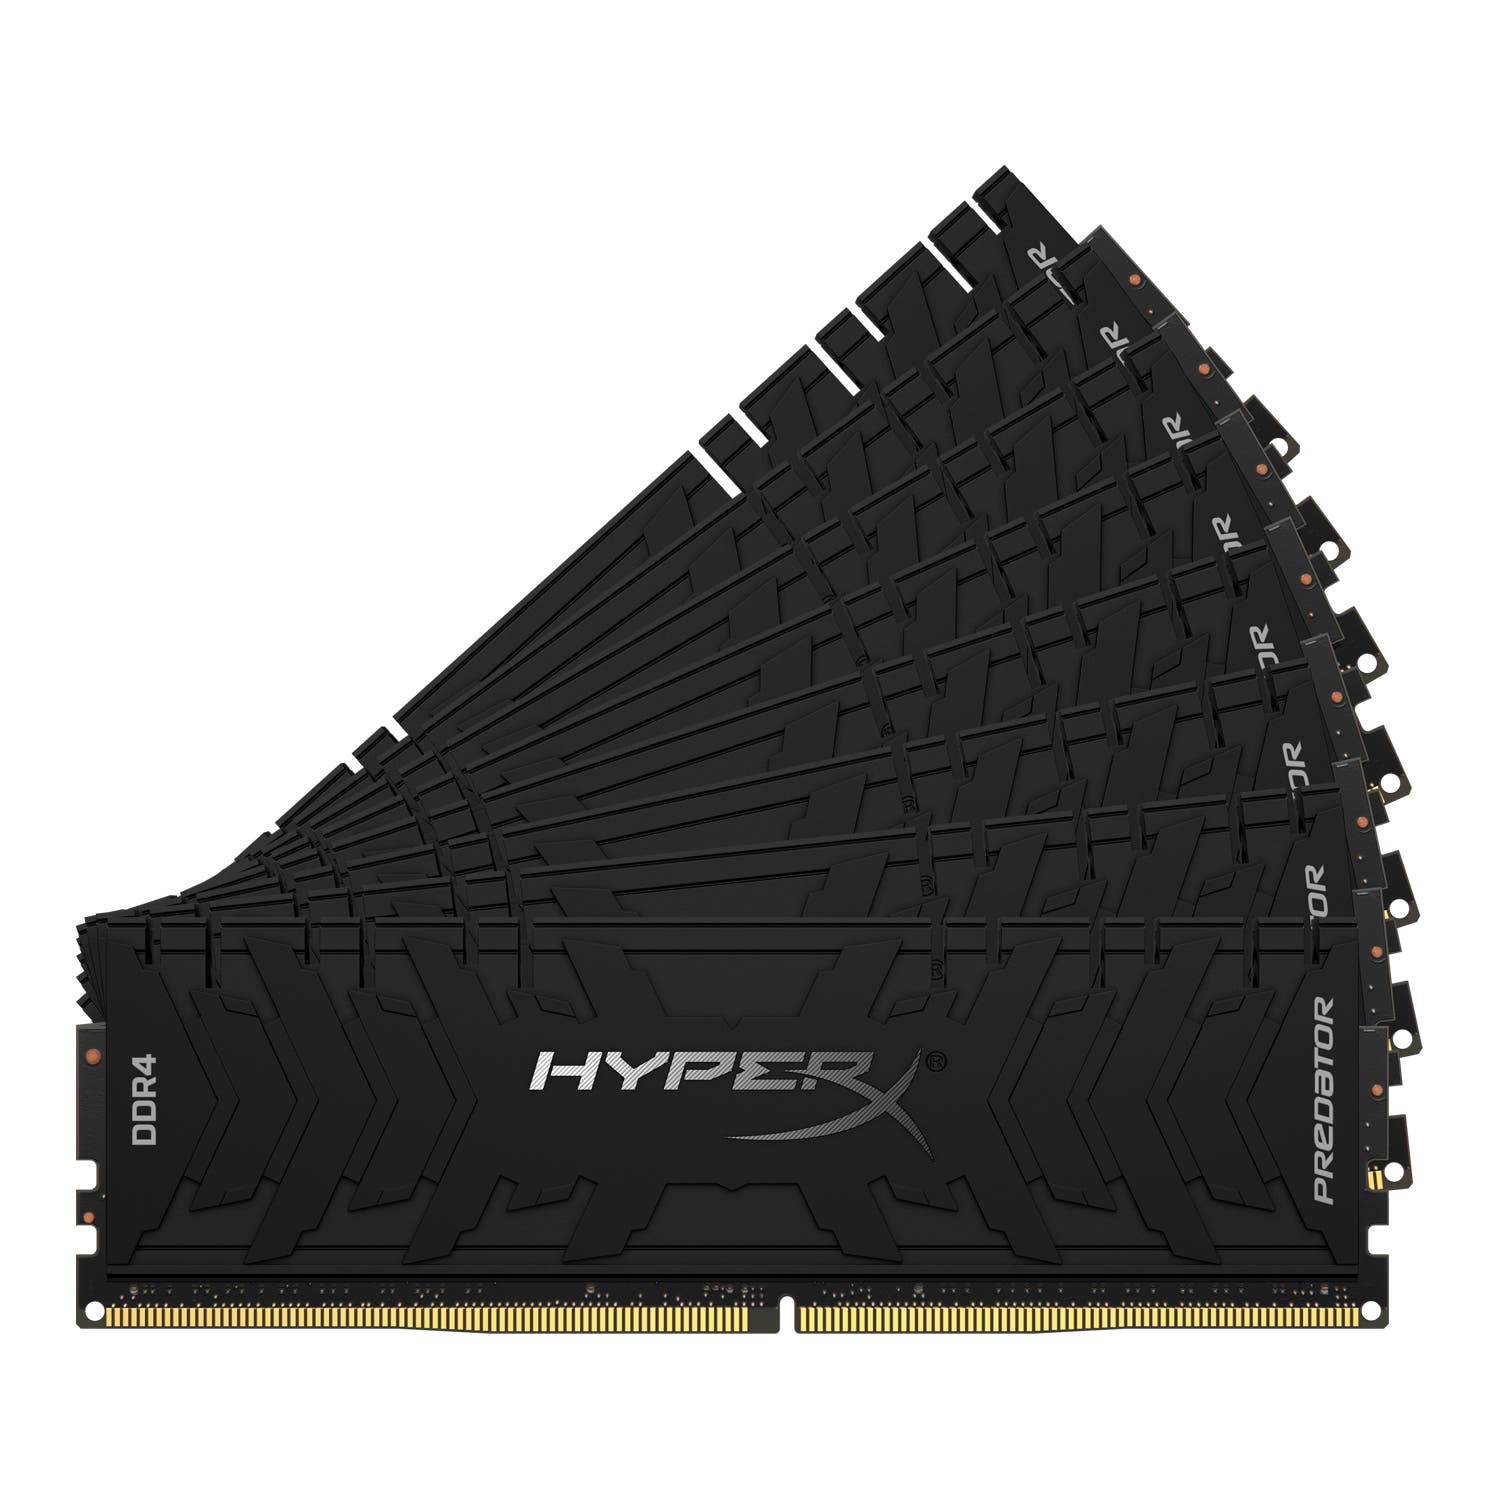 HyperX Predator DDR4 3 Kit of 8 Front Fan HyperX Predator DDR4 3 front fan kit of 8 05 06 2020 15 17